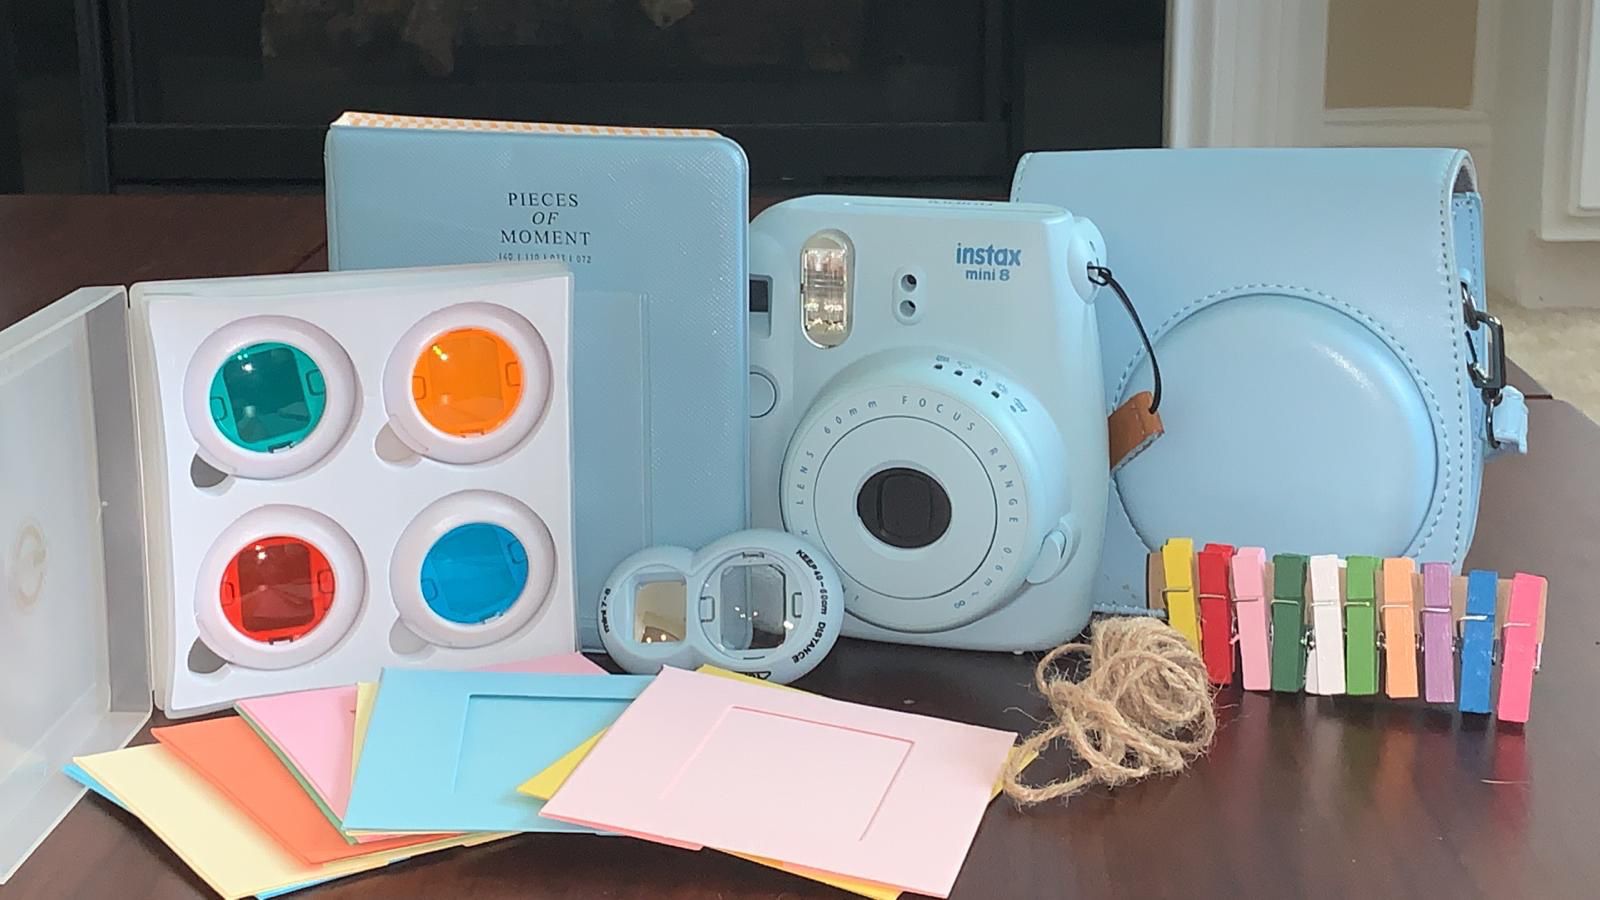 FujiFilm Instax Mini 8 Polaroid Camera w/ Case and Accessories